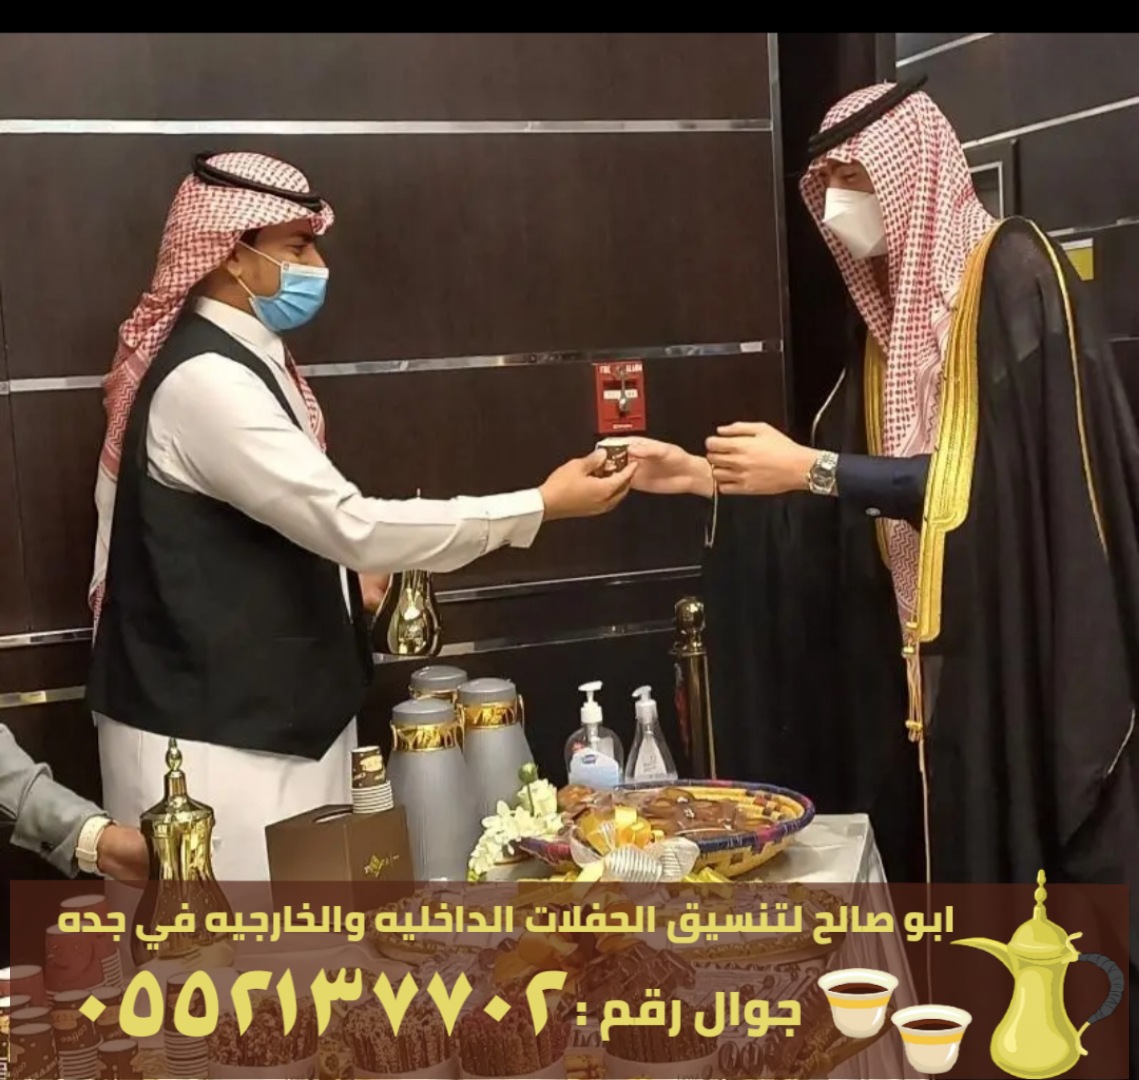 صبابين قهوة في جدة و صبابات قهوه , 0552137702 P_2371gqxnp7